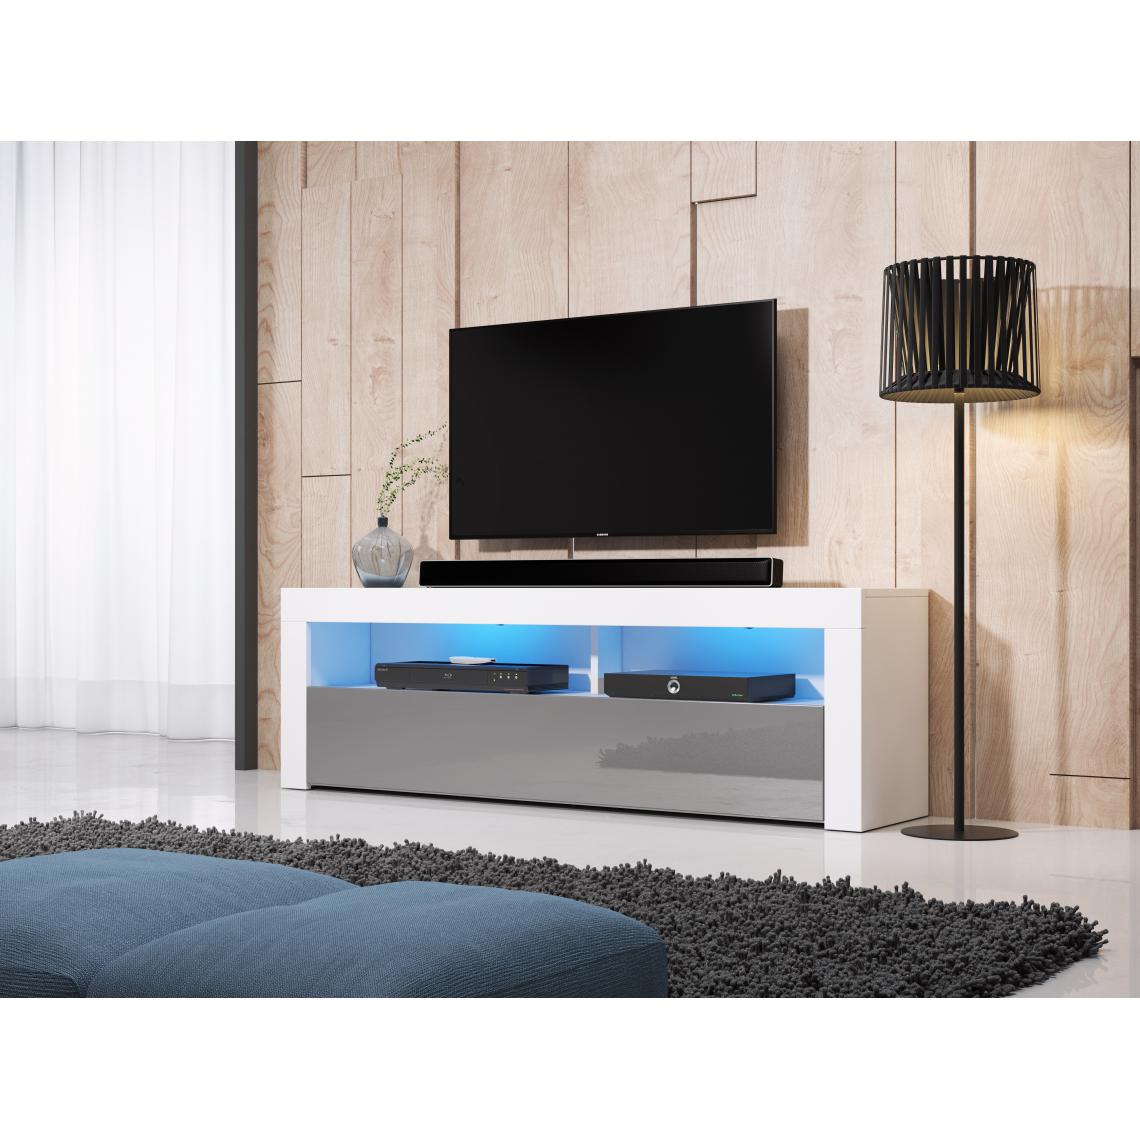 3xeliving - Meuble TV moderne / élégant Nuntak blanc / gris brillant 160cm LED - Meubles TV, Hi-Fi